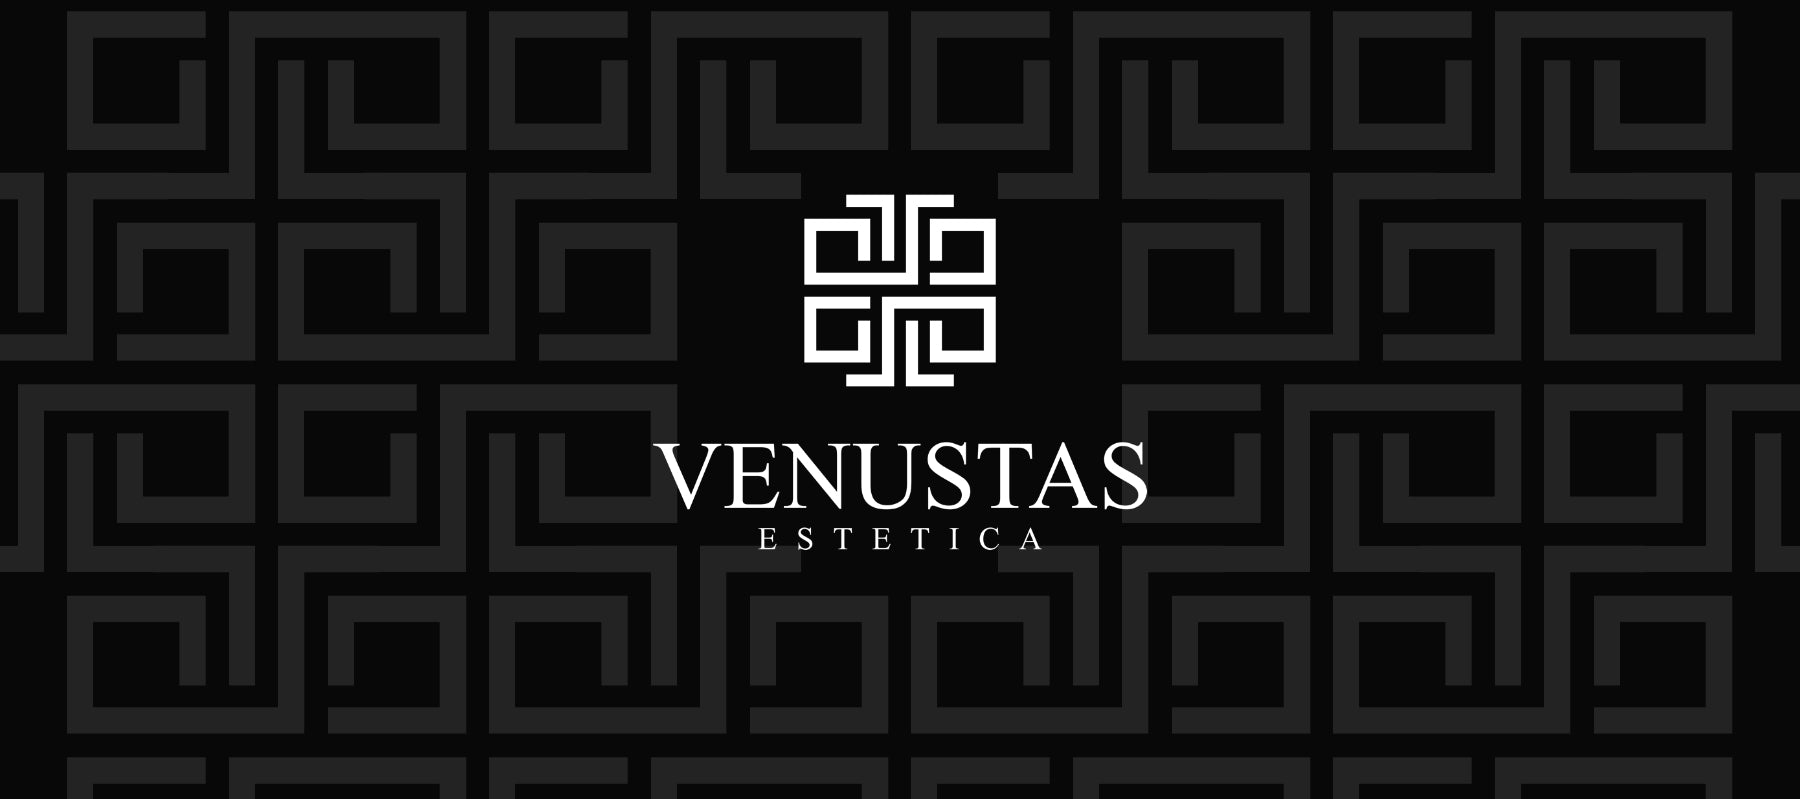 Venustas Estetica website header1